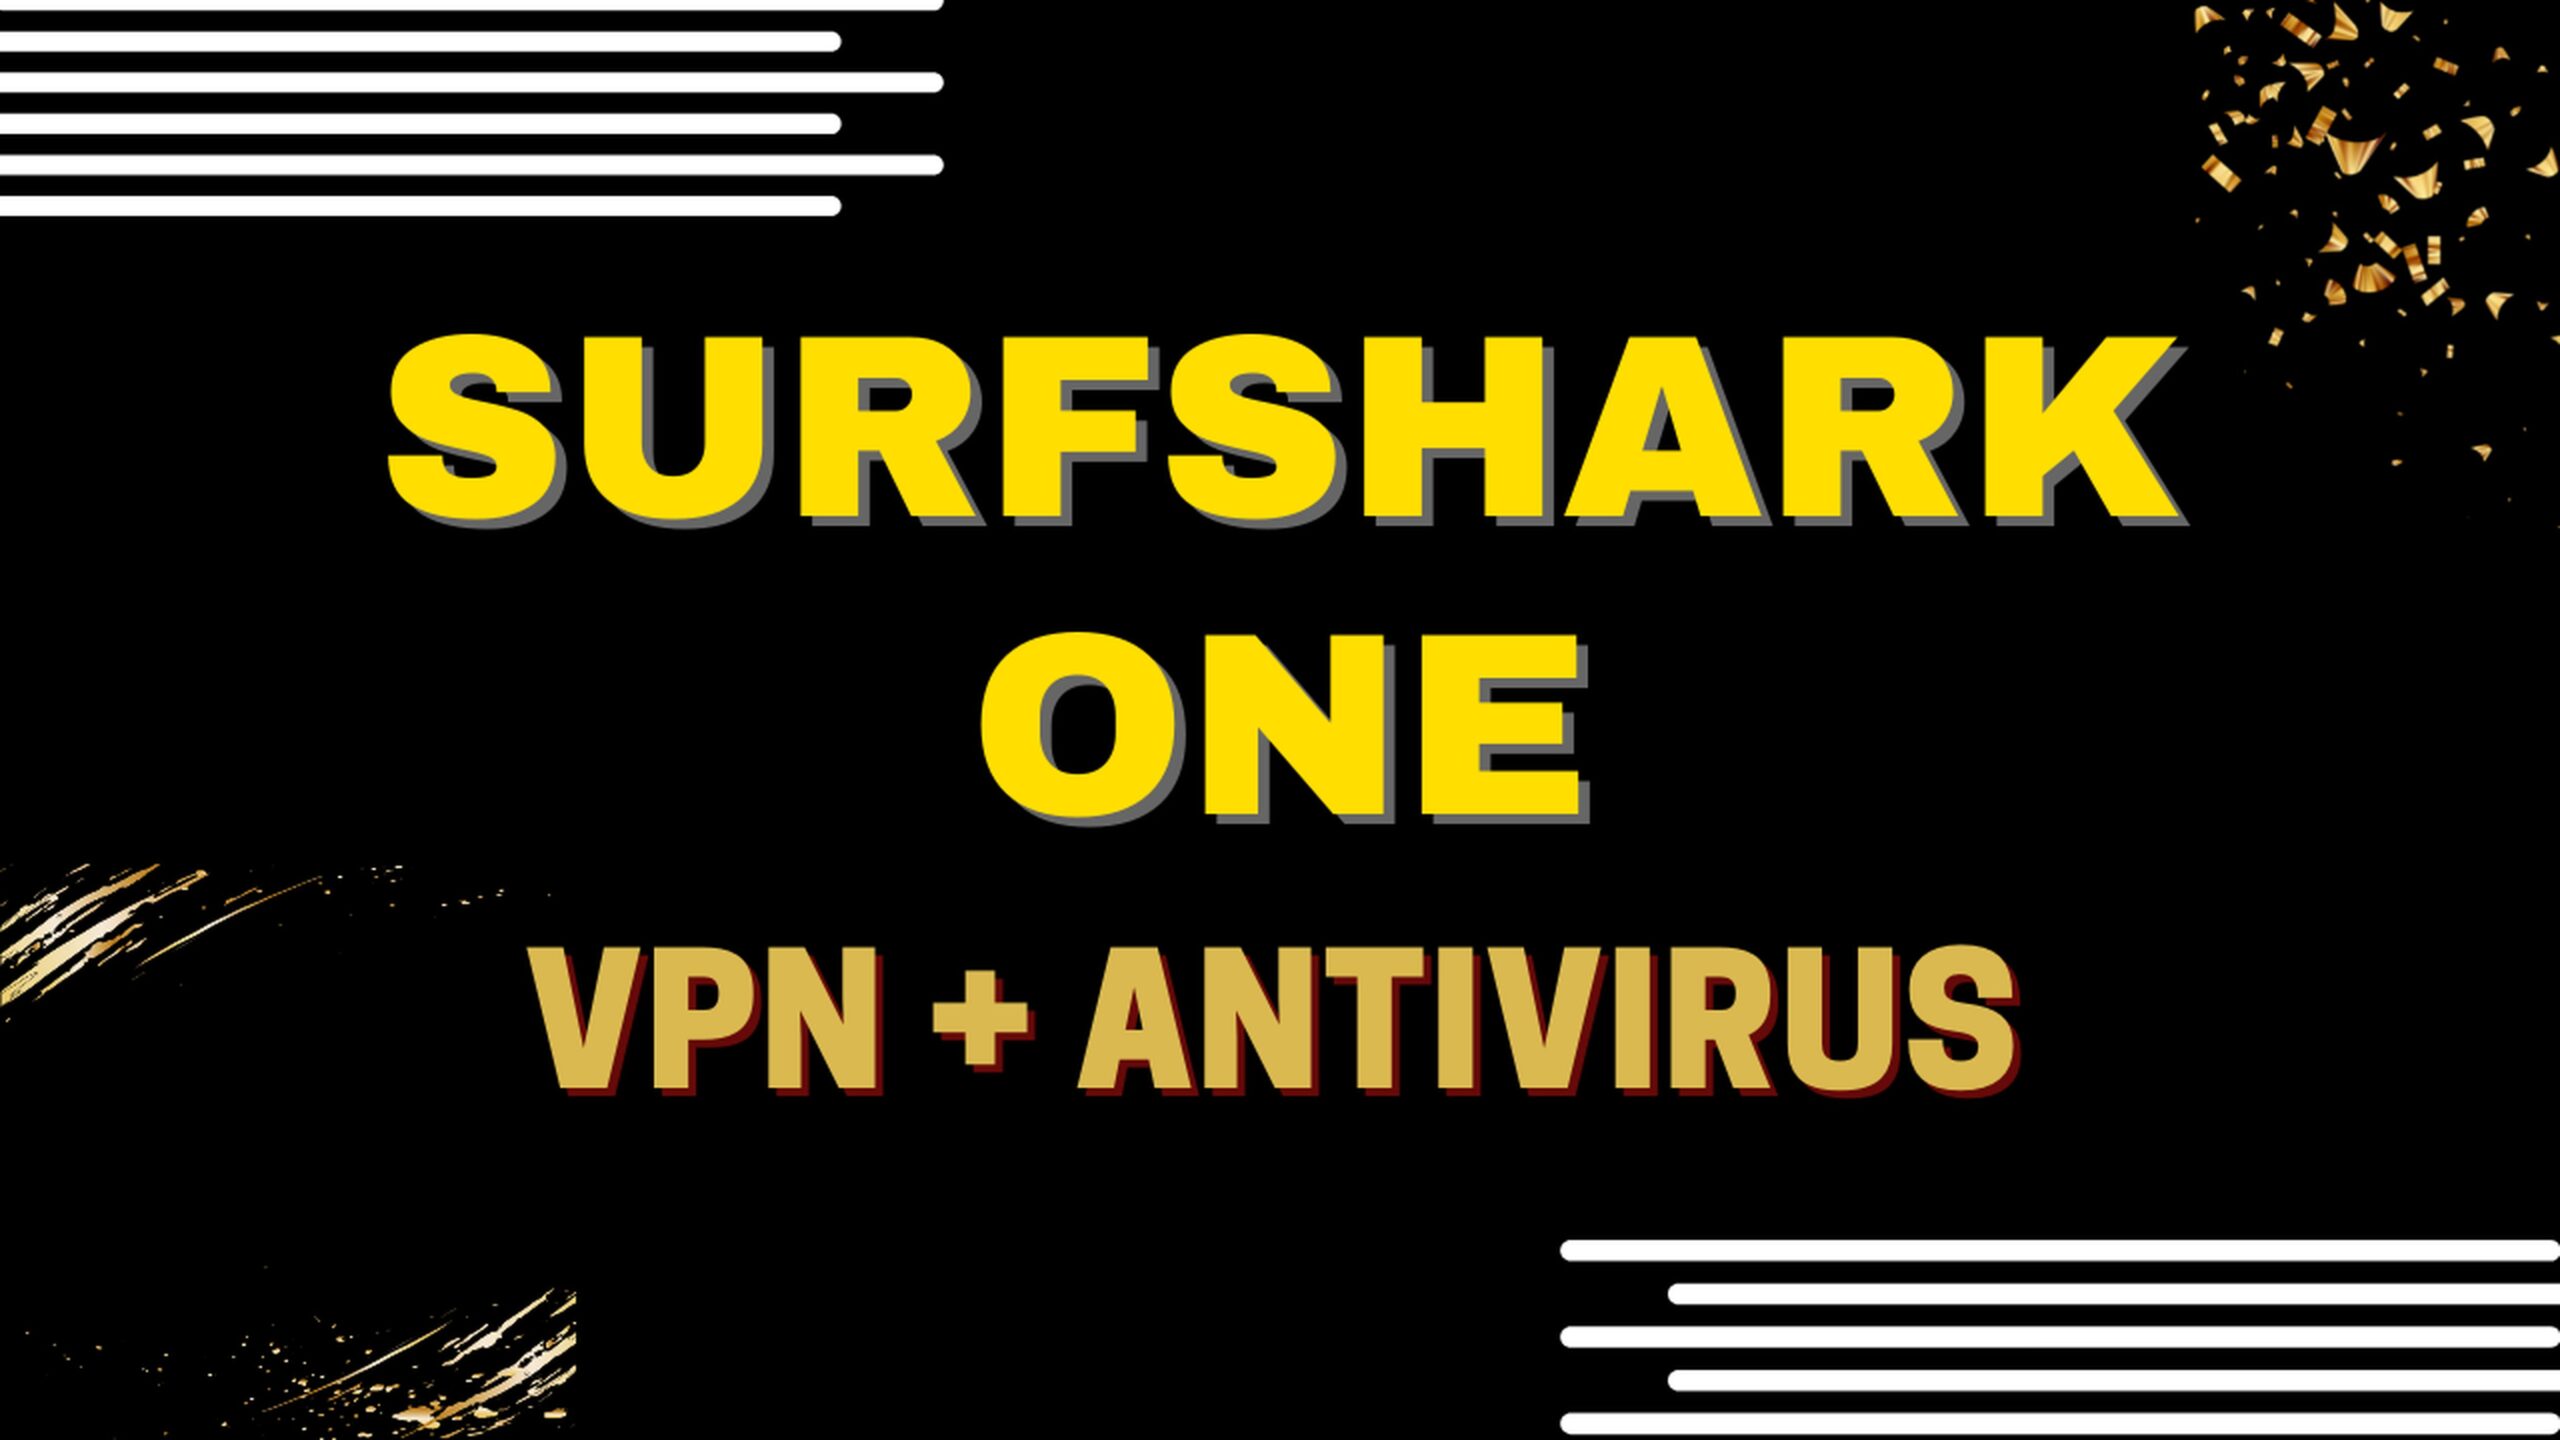 Surfshark One, une offre tout-en-un : VPN + Antivirus 3